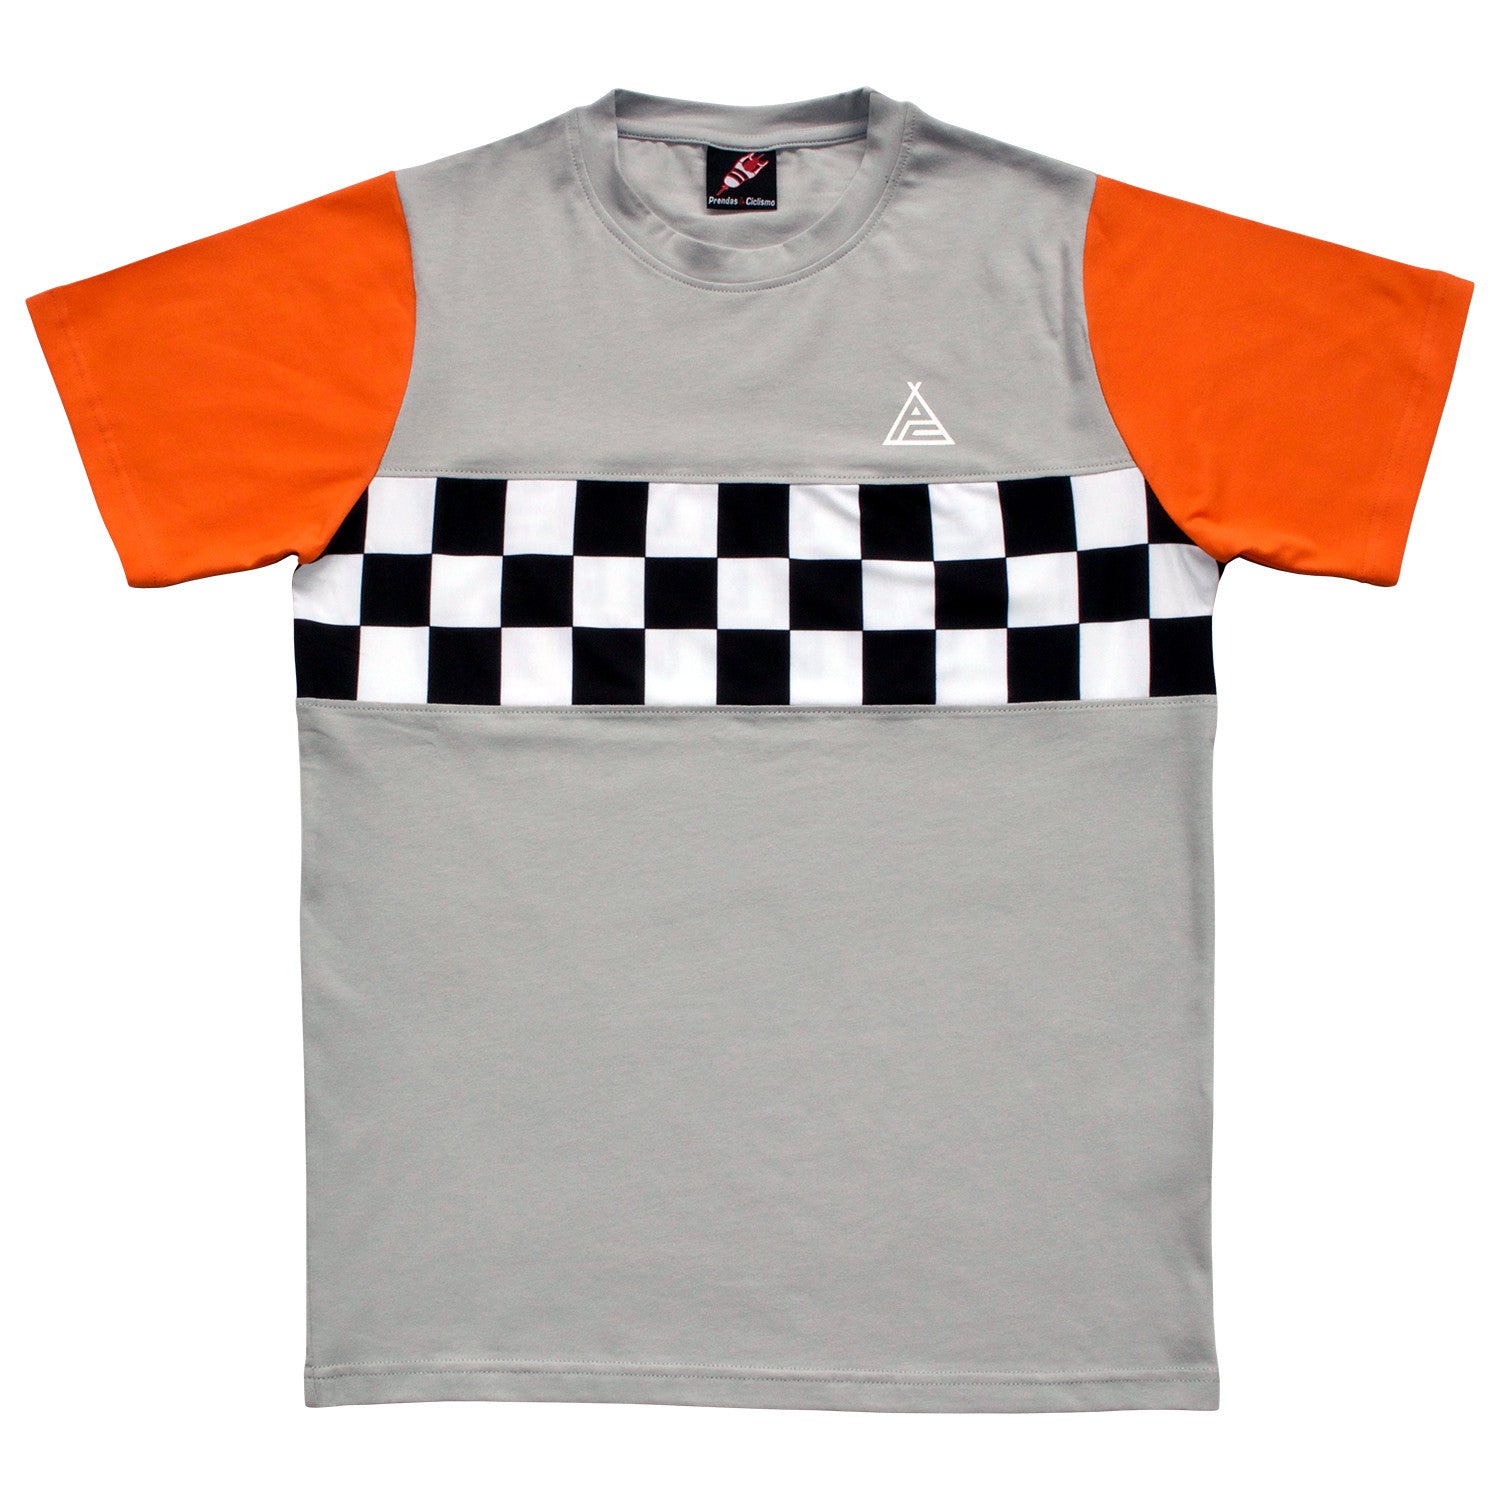 Foreign Legion Grey/Orange T-Shirt